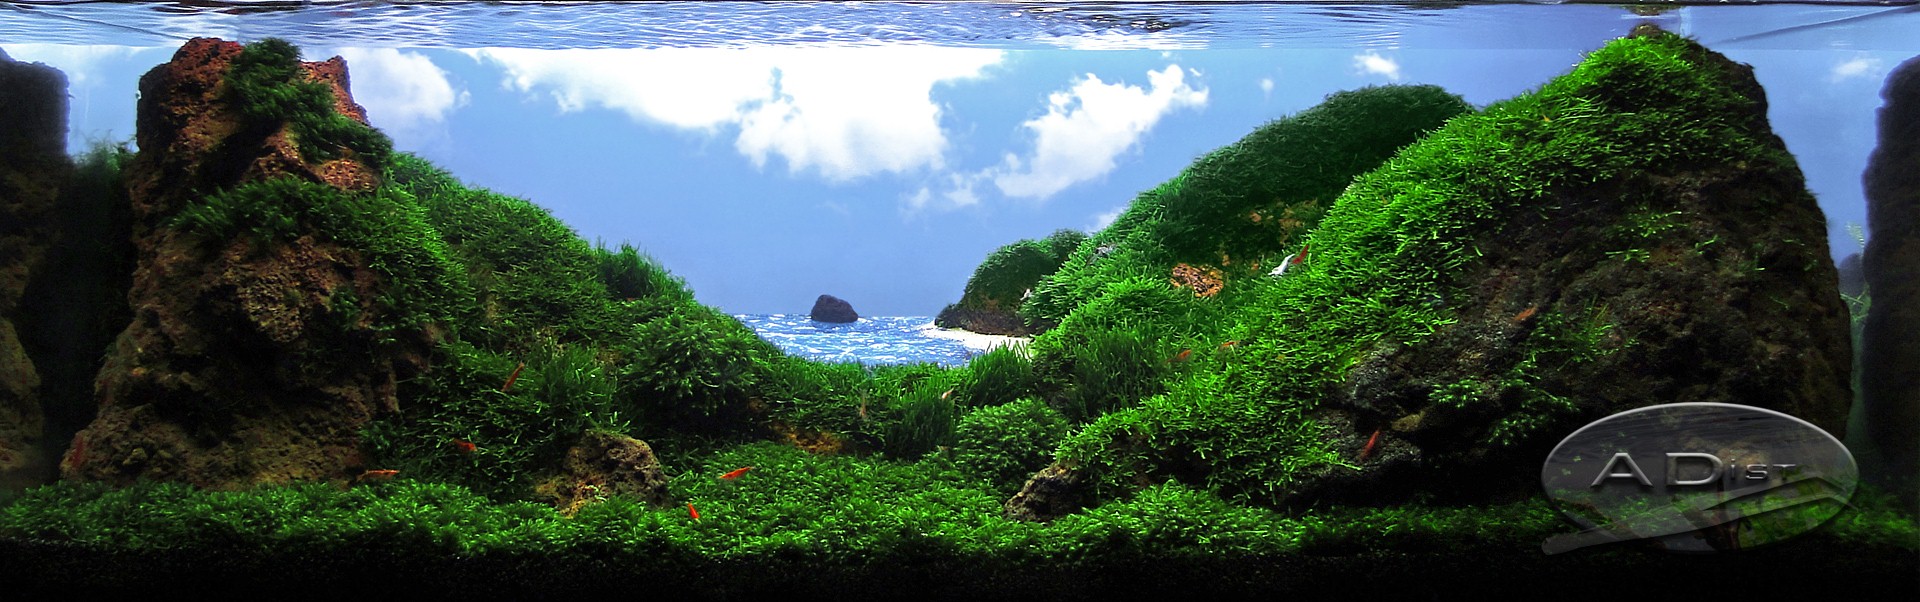 Акваскейп – одно из направлений в искусстве природной аквариумистики